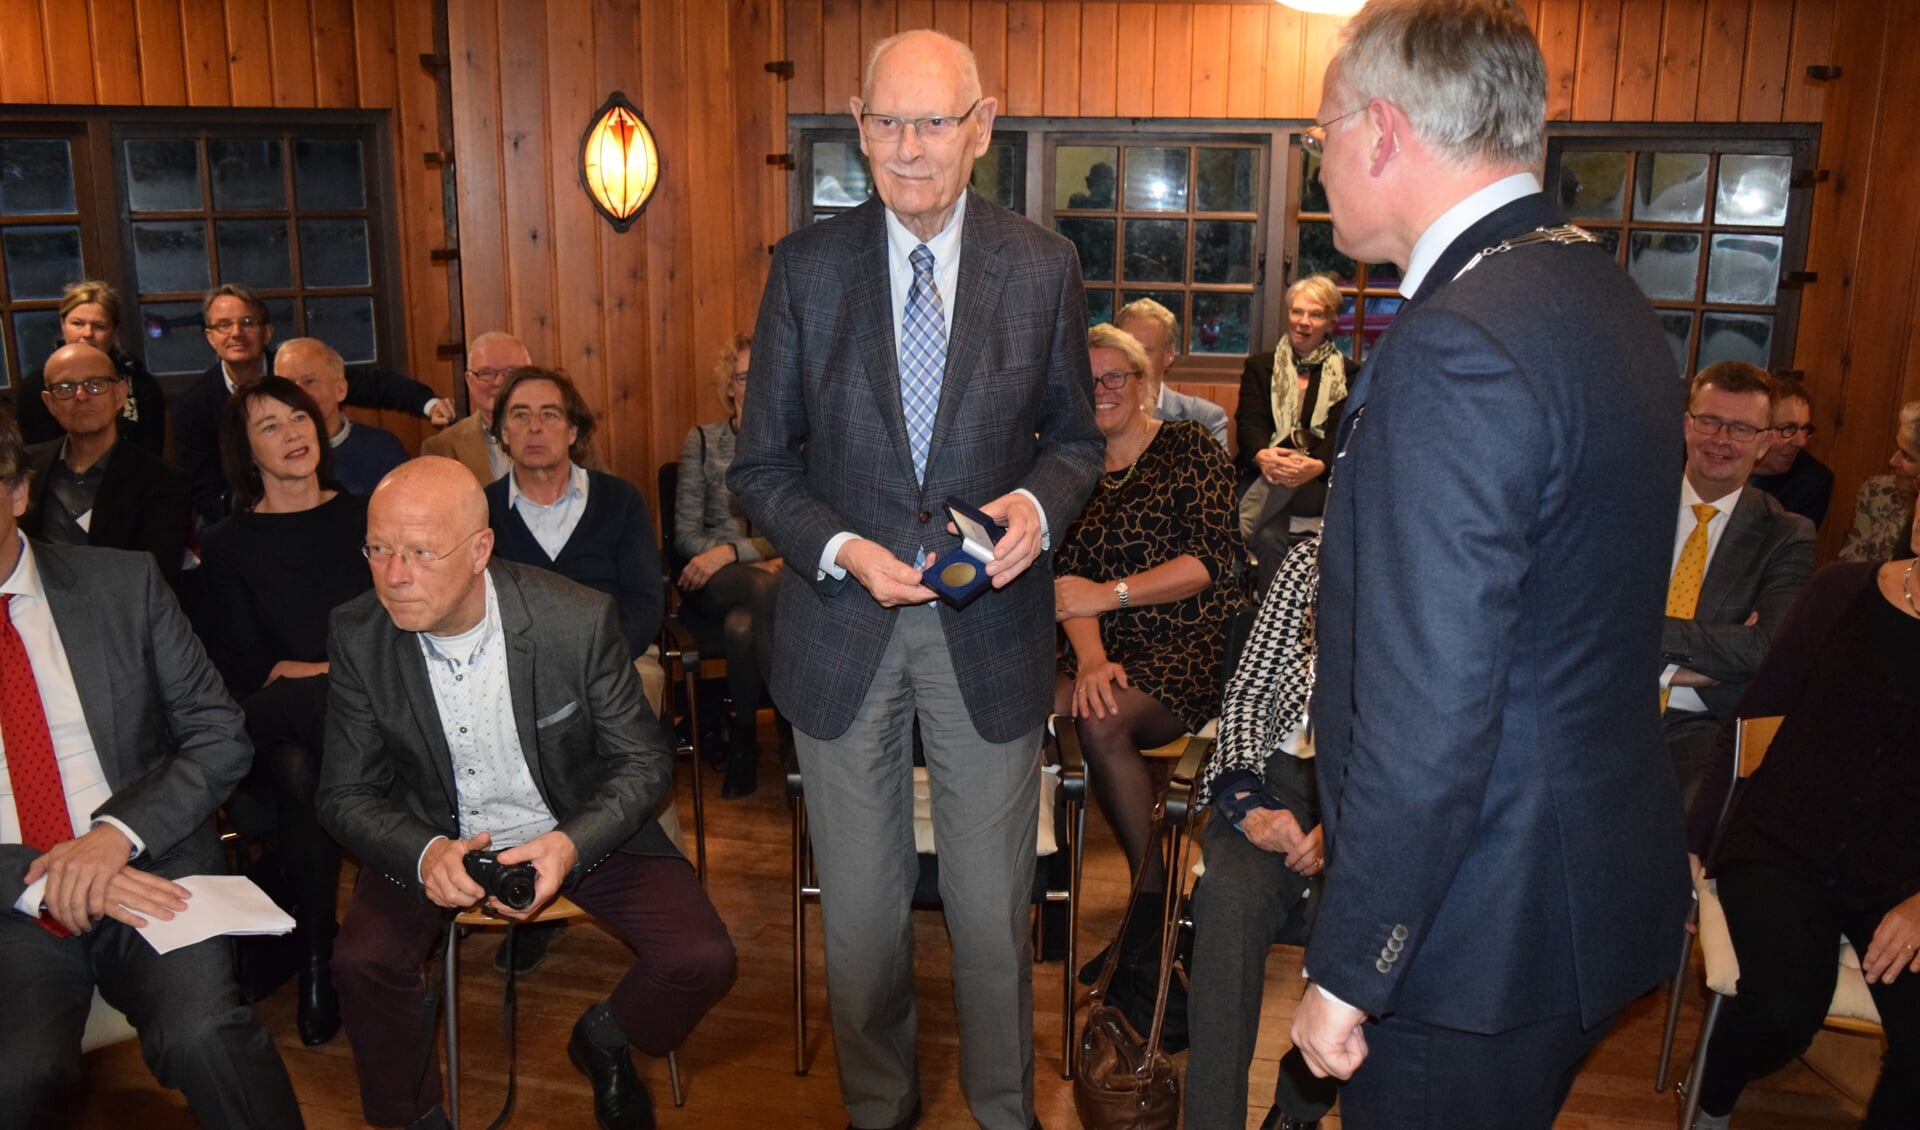 De heer van Hasselt ontvangt de Chapeaupenning uit handen van de burgemeester.